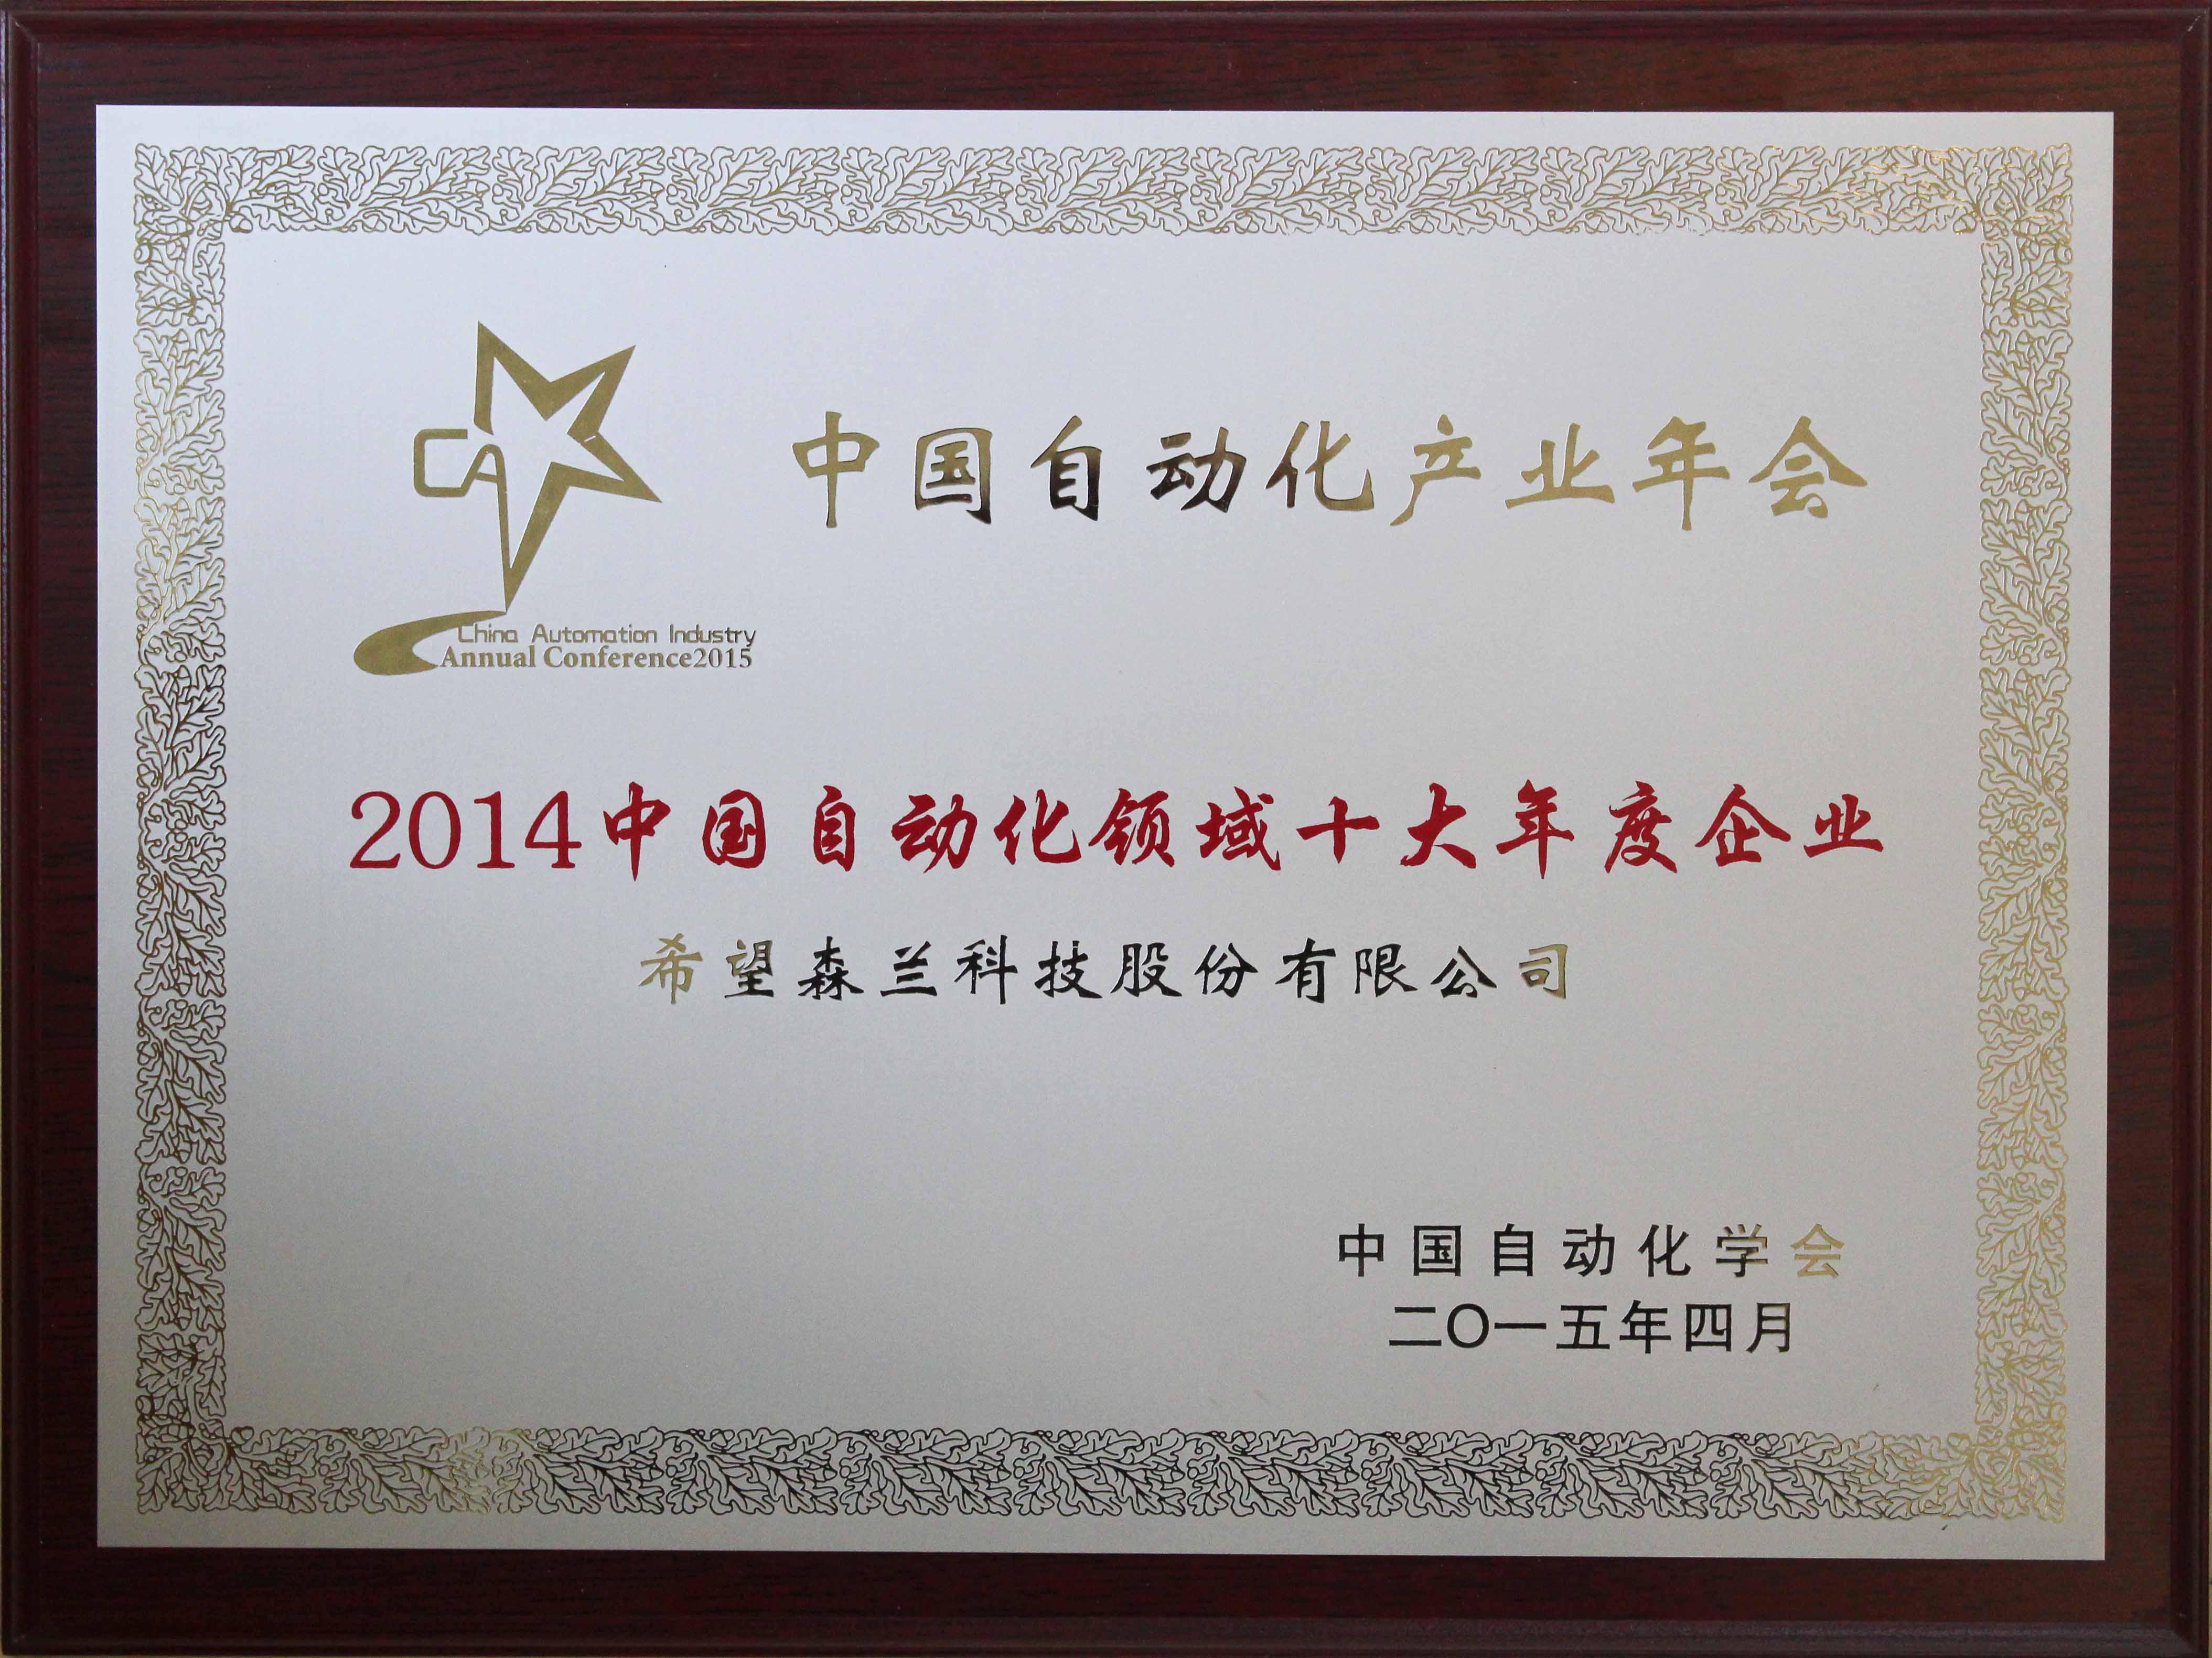 中国自动化网,2015年中国自动化产业年会，希望森兰荣获三项大奖